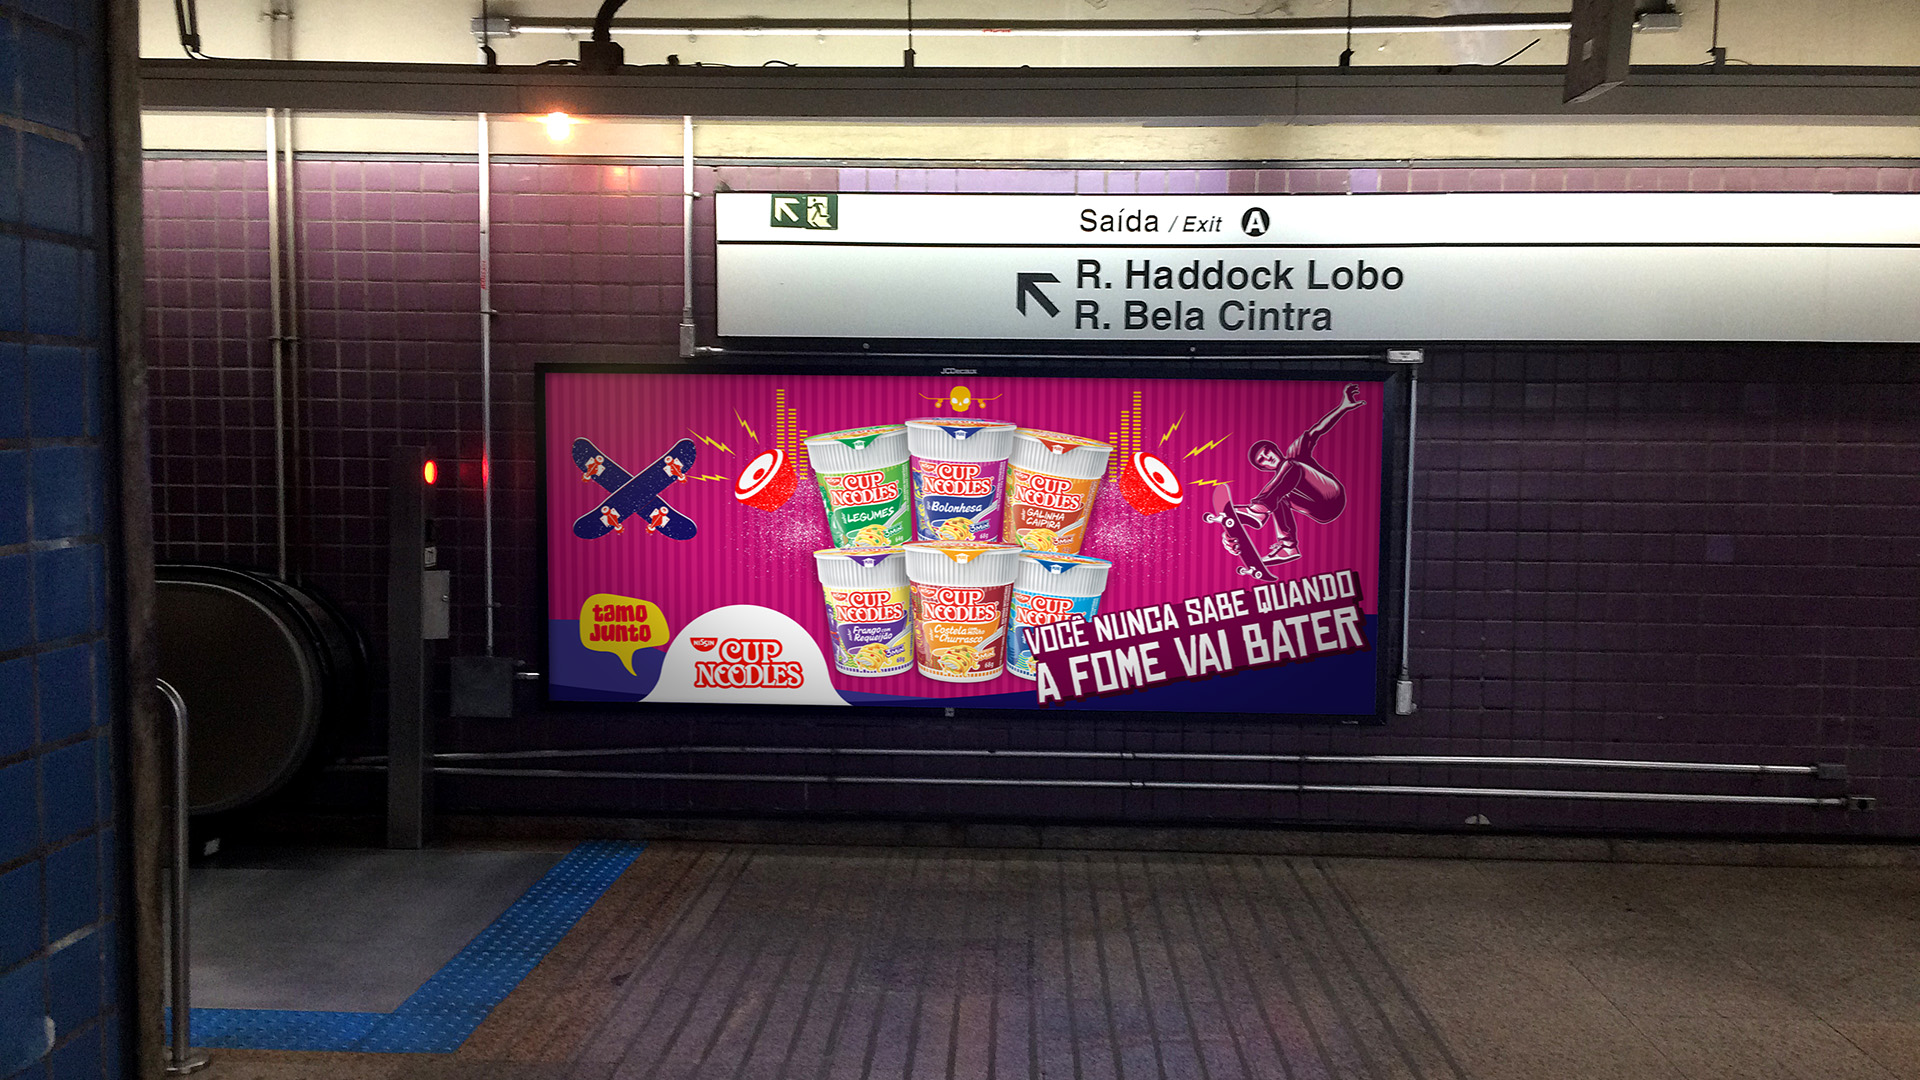 Imagem de painel OOH no metrô com comunicação Cup Noodles Nissin.